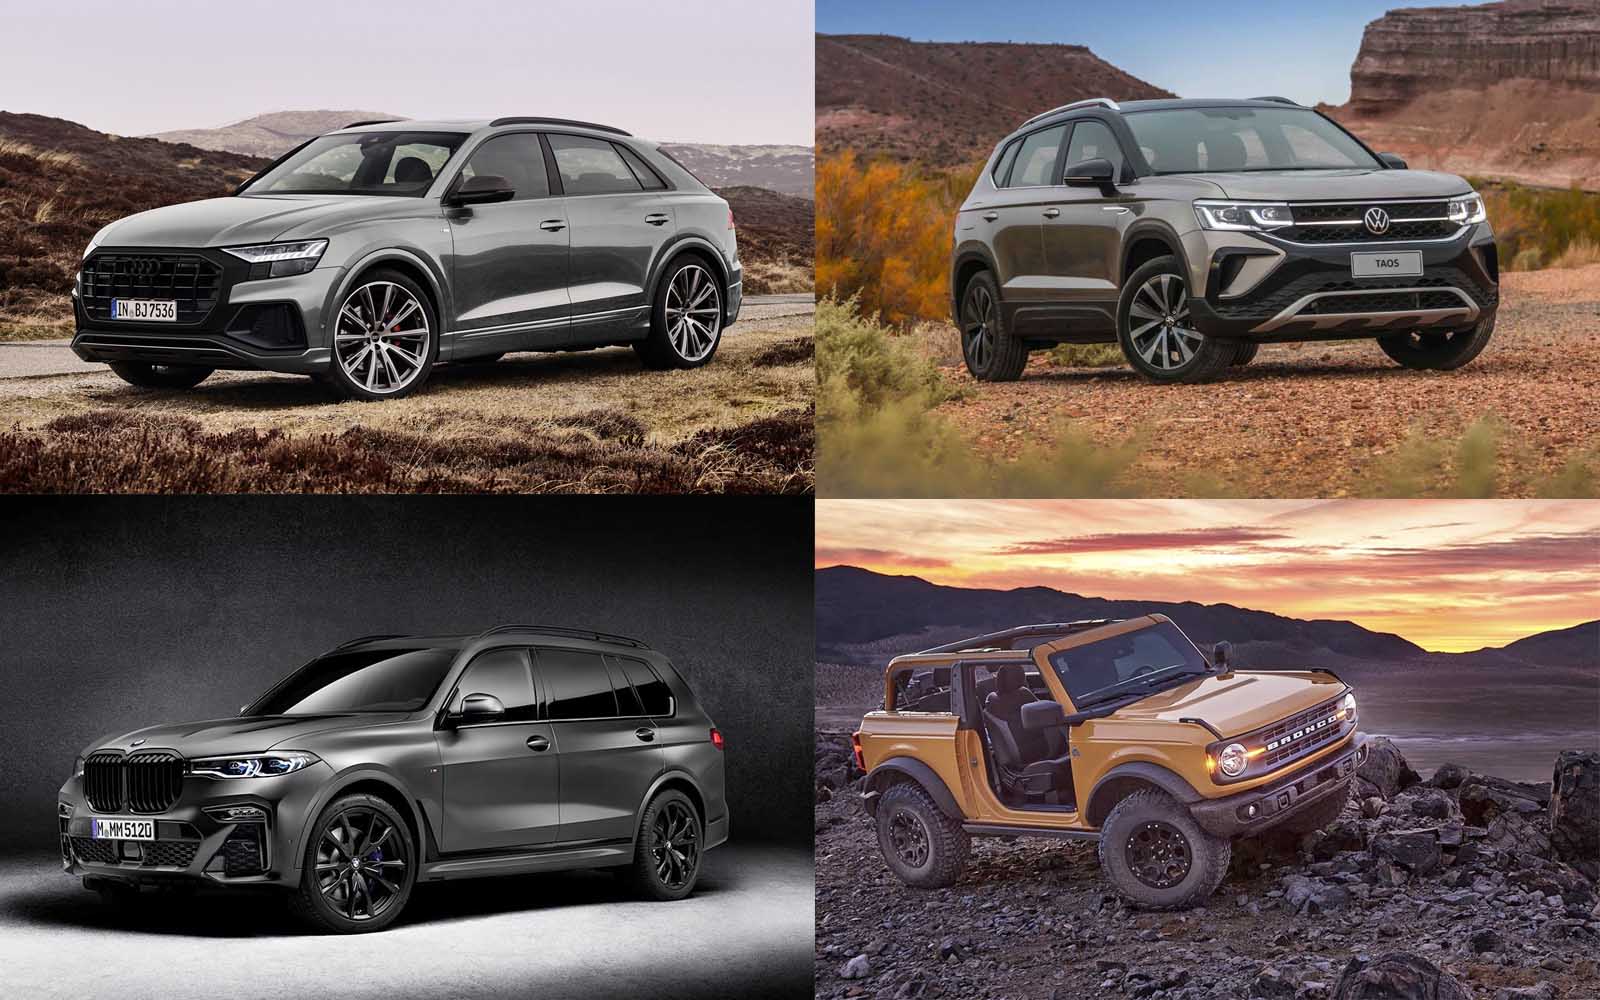 Novedades destacadas en todoterrenos y SUV: Audi, Ford, Volkswagen y BMW